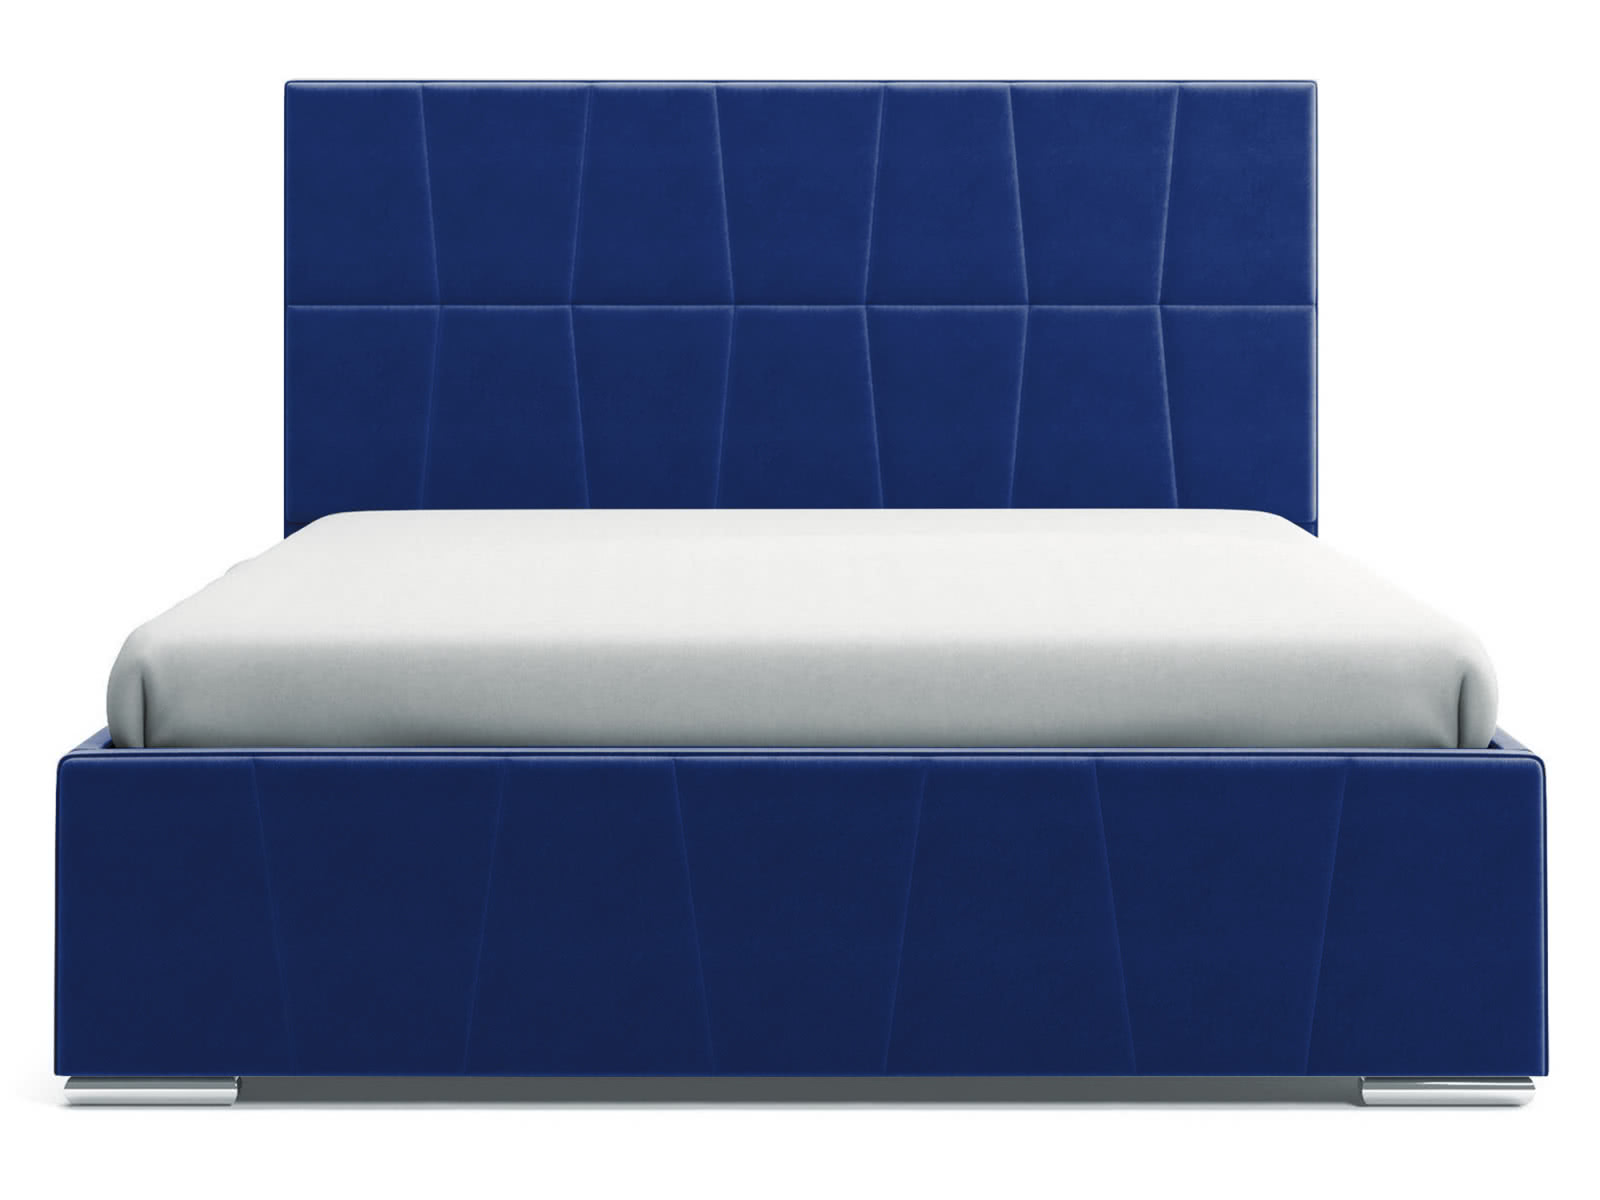 Купить Кровать СтолЛайн Пассаж 160x200 с подъемным механизмом недорого в интернет-магазине